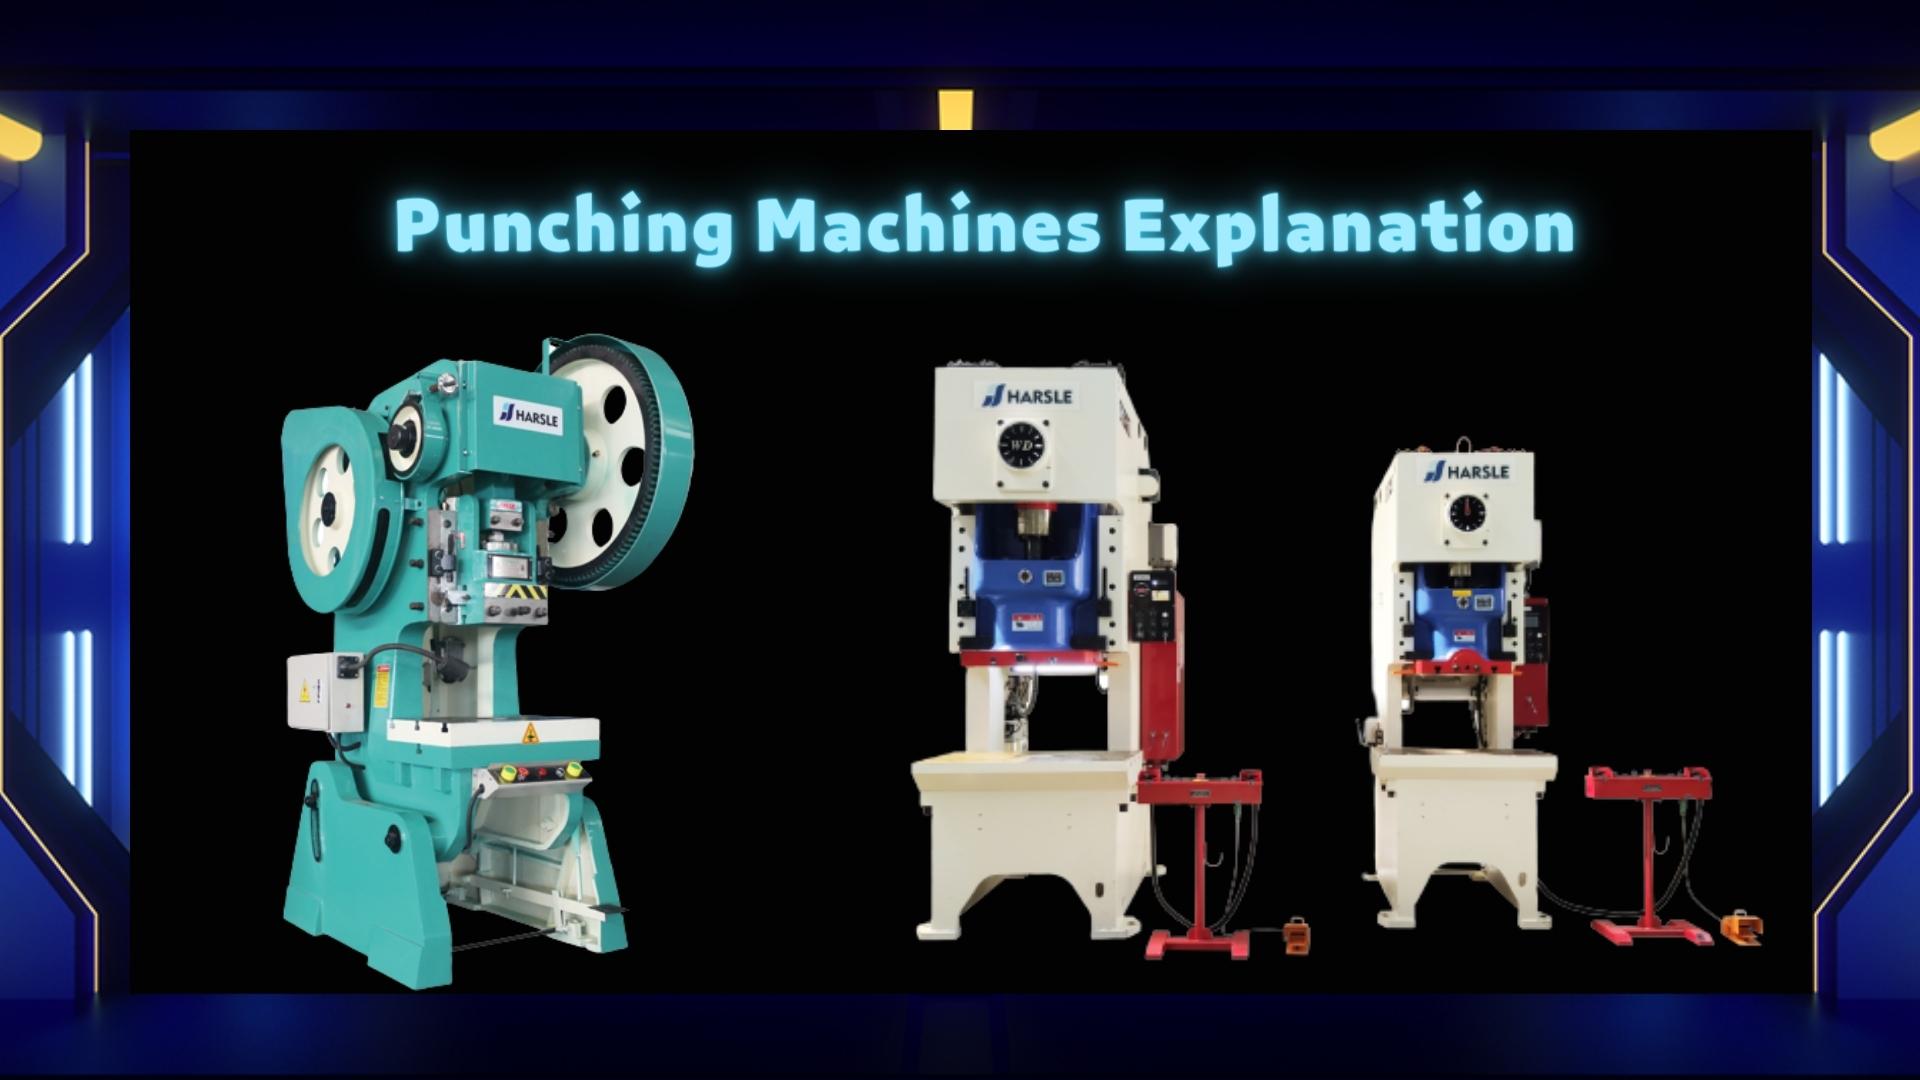 Punching Machines Explanation - HARSLE